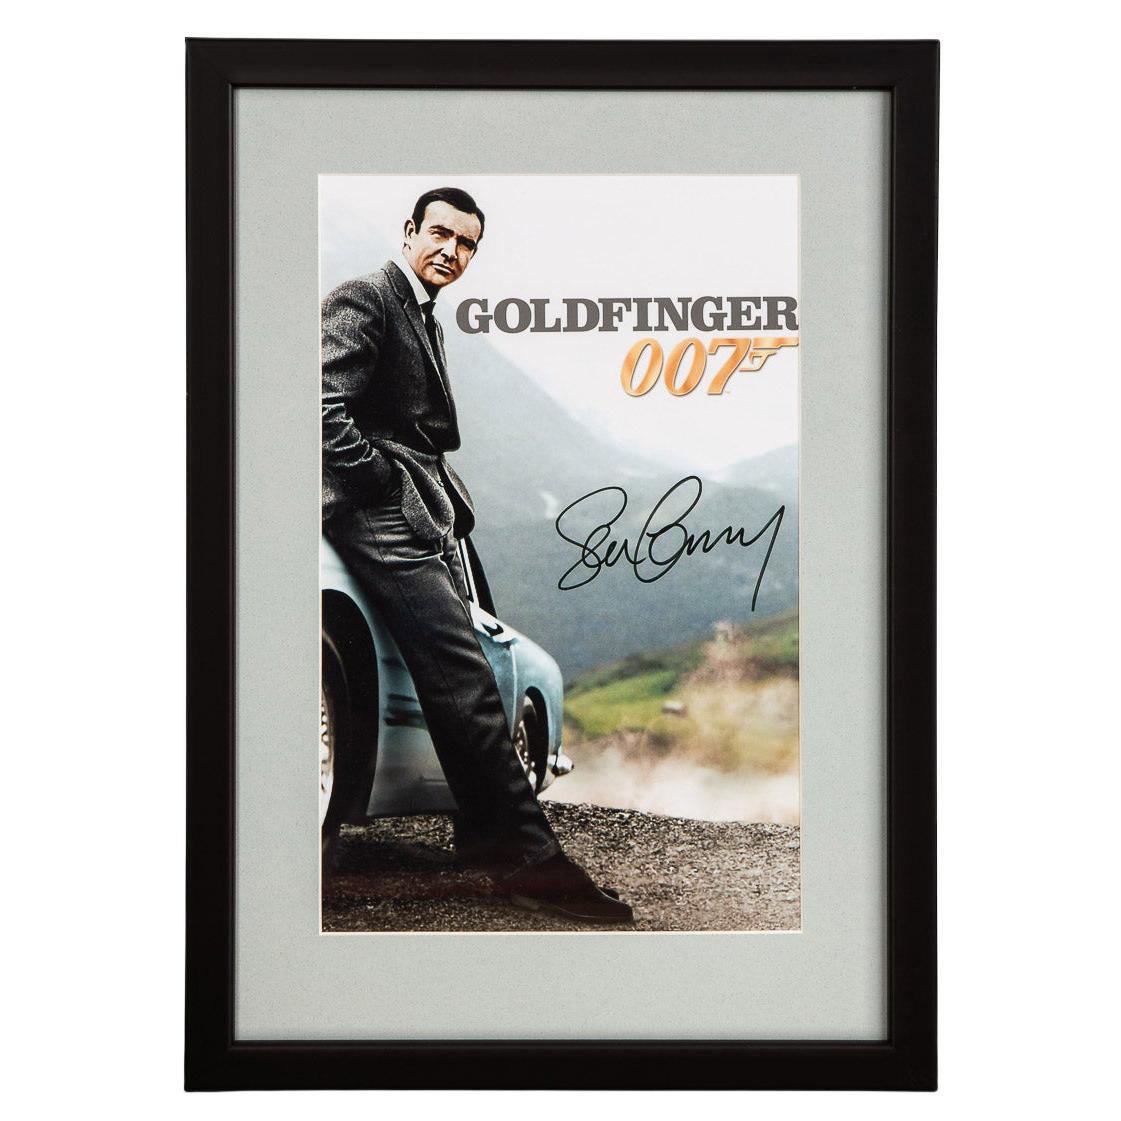 James Bond 007 Sean Connery Aston Martin Db5 Photographie encadrée avec signature